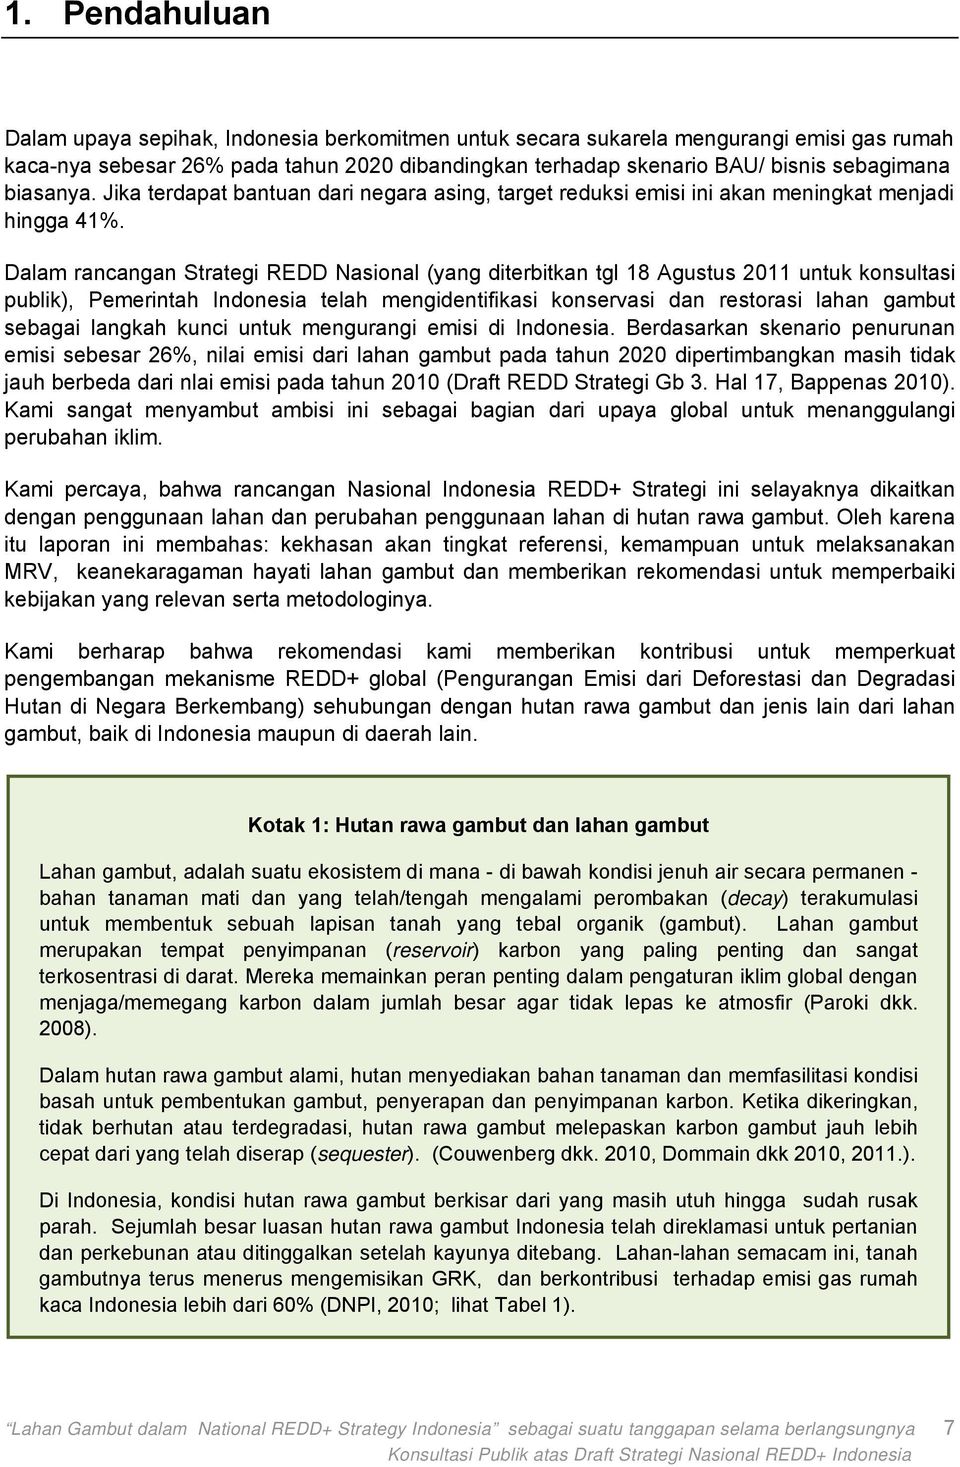 Dalam rancangan Strategi REDD Nasional (yang diterbitkan tgl 18 Agustus 2011 untuk konsultasi publik), Pemerintah Indonesia telah mengidentifikasi konservasi dan restorasi lahan gambut sebagai